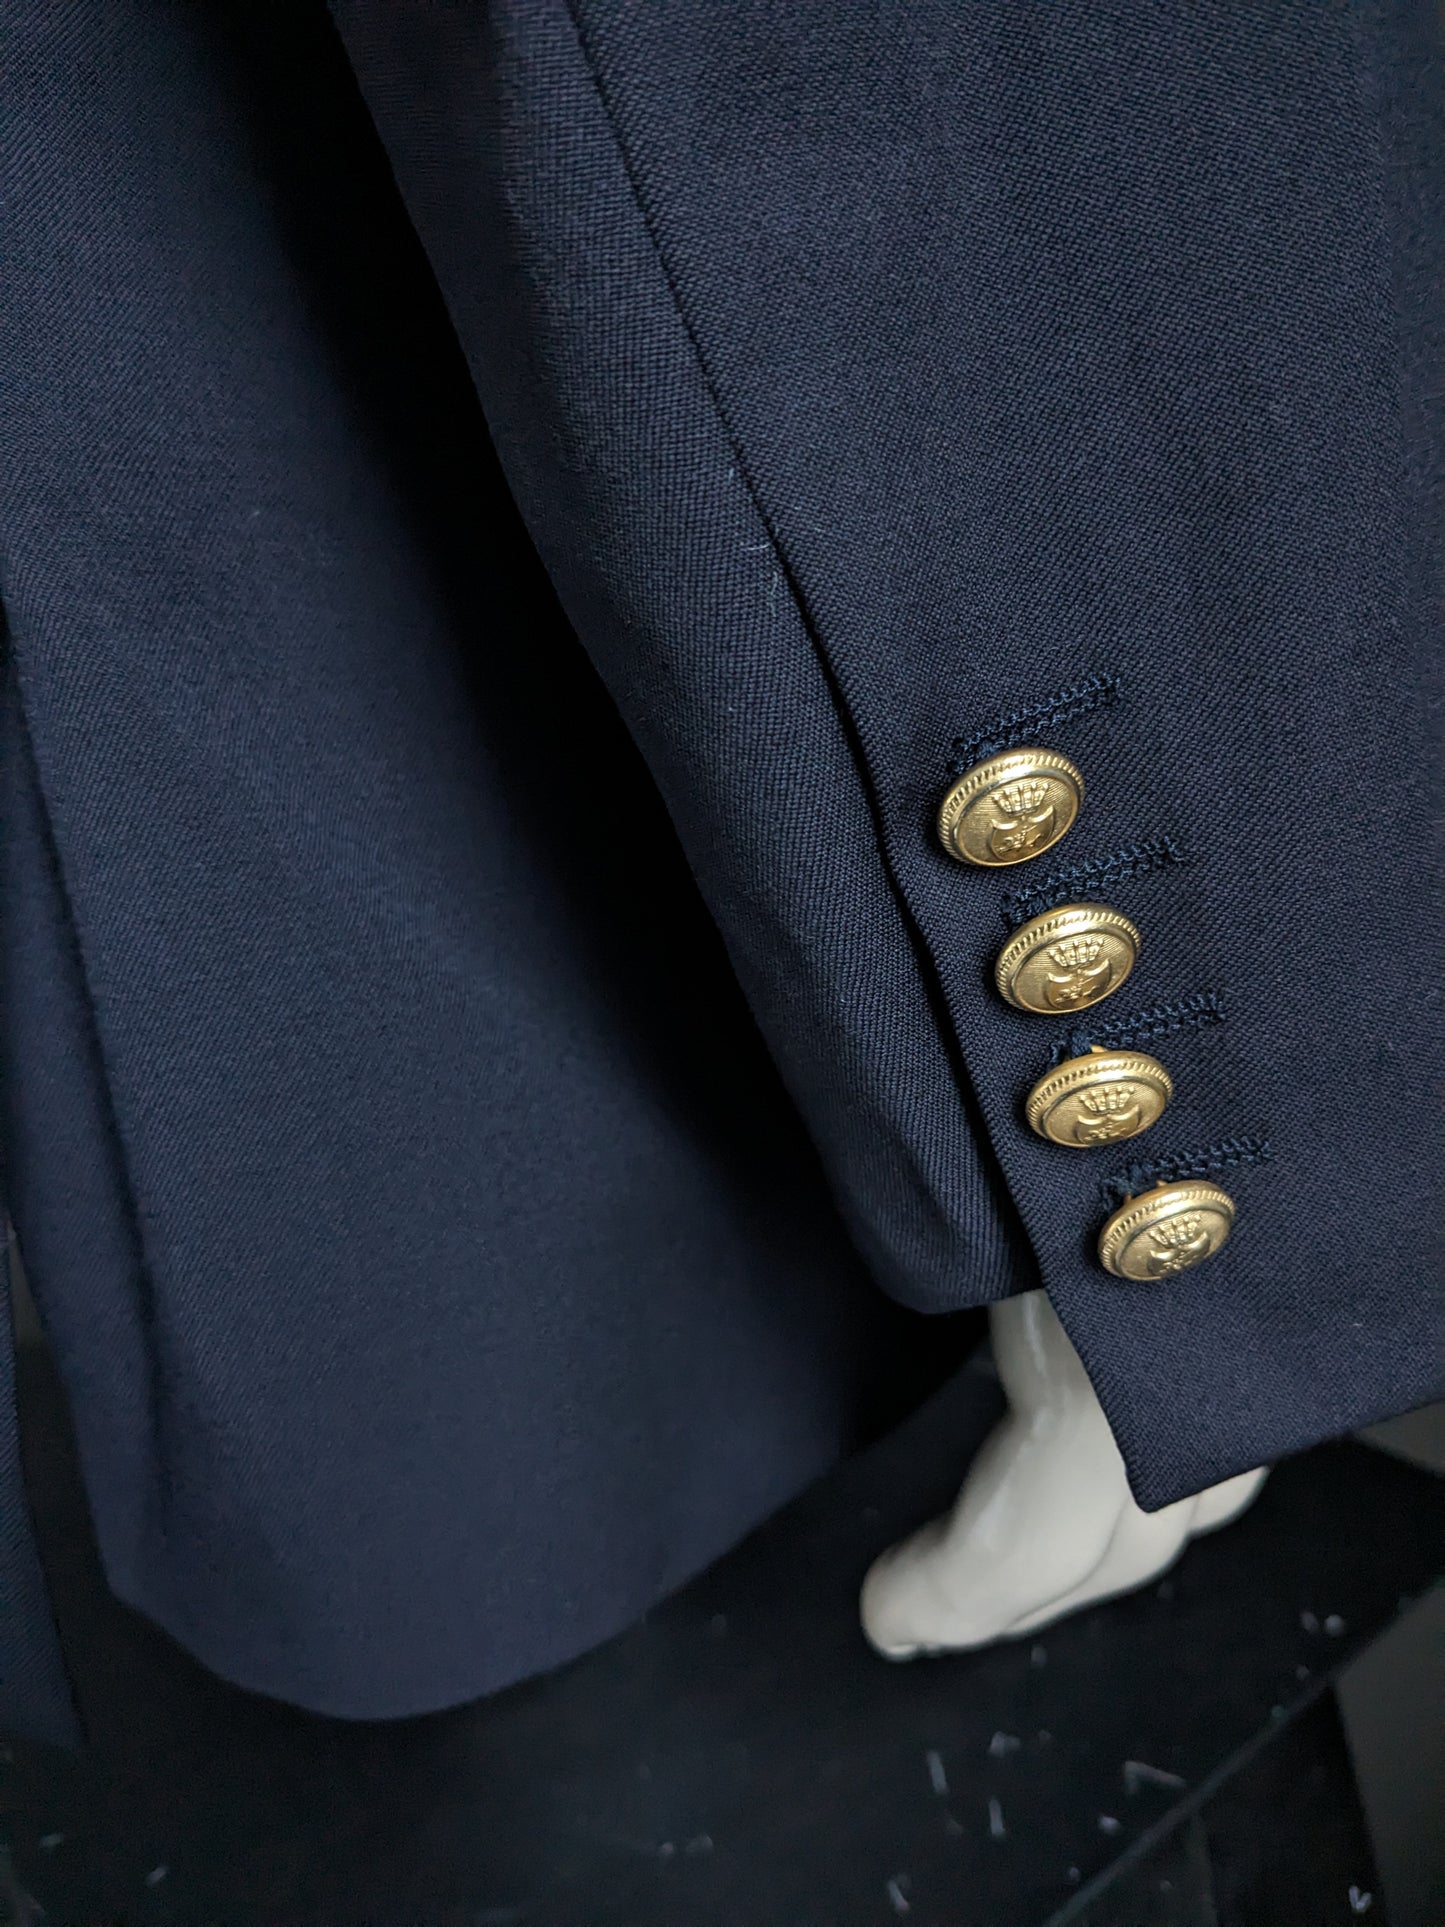 Veste en laine scapa vintage avec de beaux boutons. Couleur bleu foncé. Taille 58 / XL.